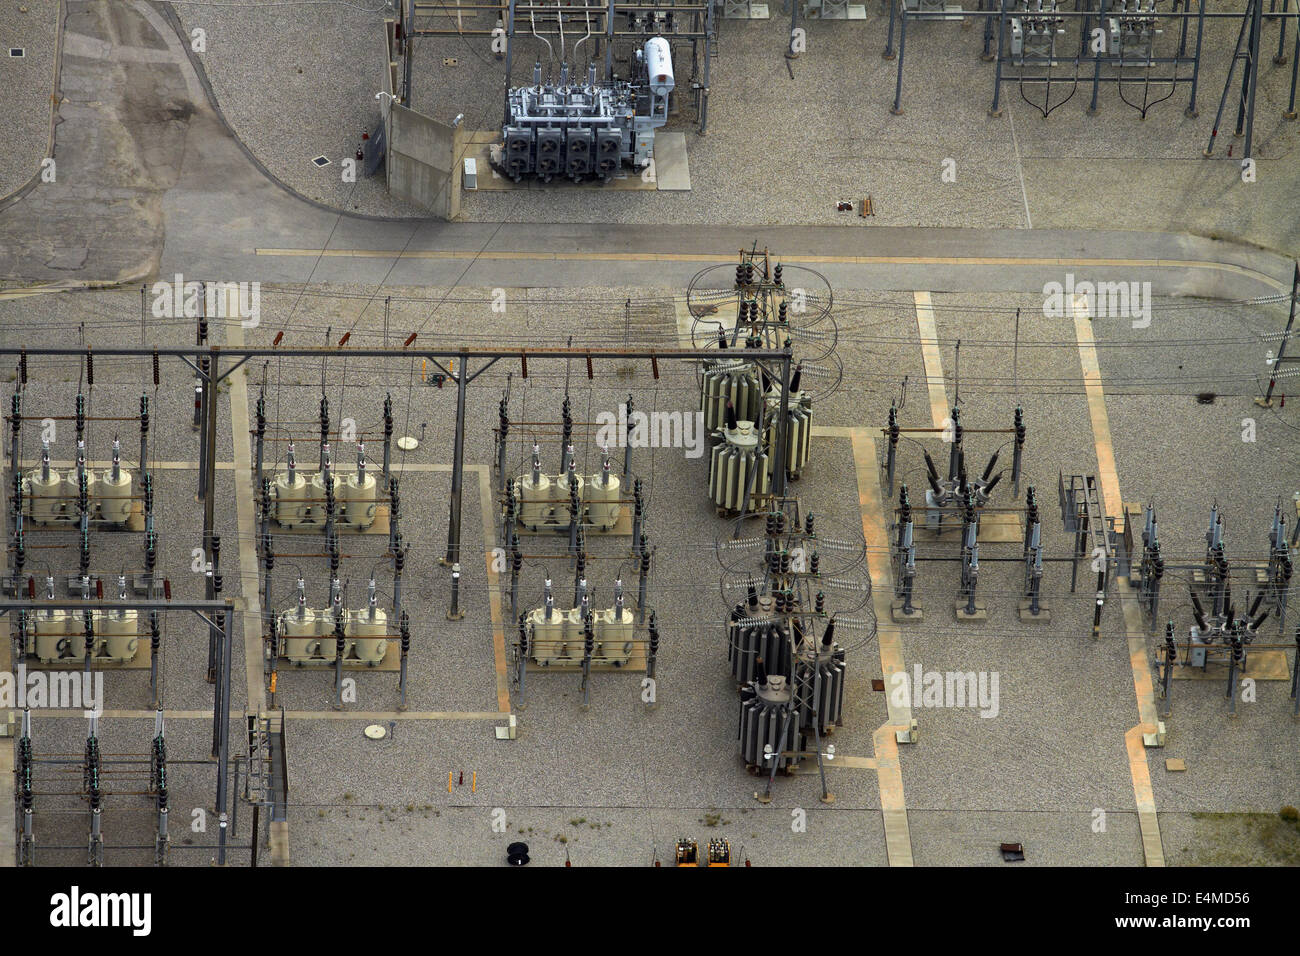 Subestación eléctrica, West Hollywood, Los Angeles, California, EE.UU. - antena Foto de stock